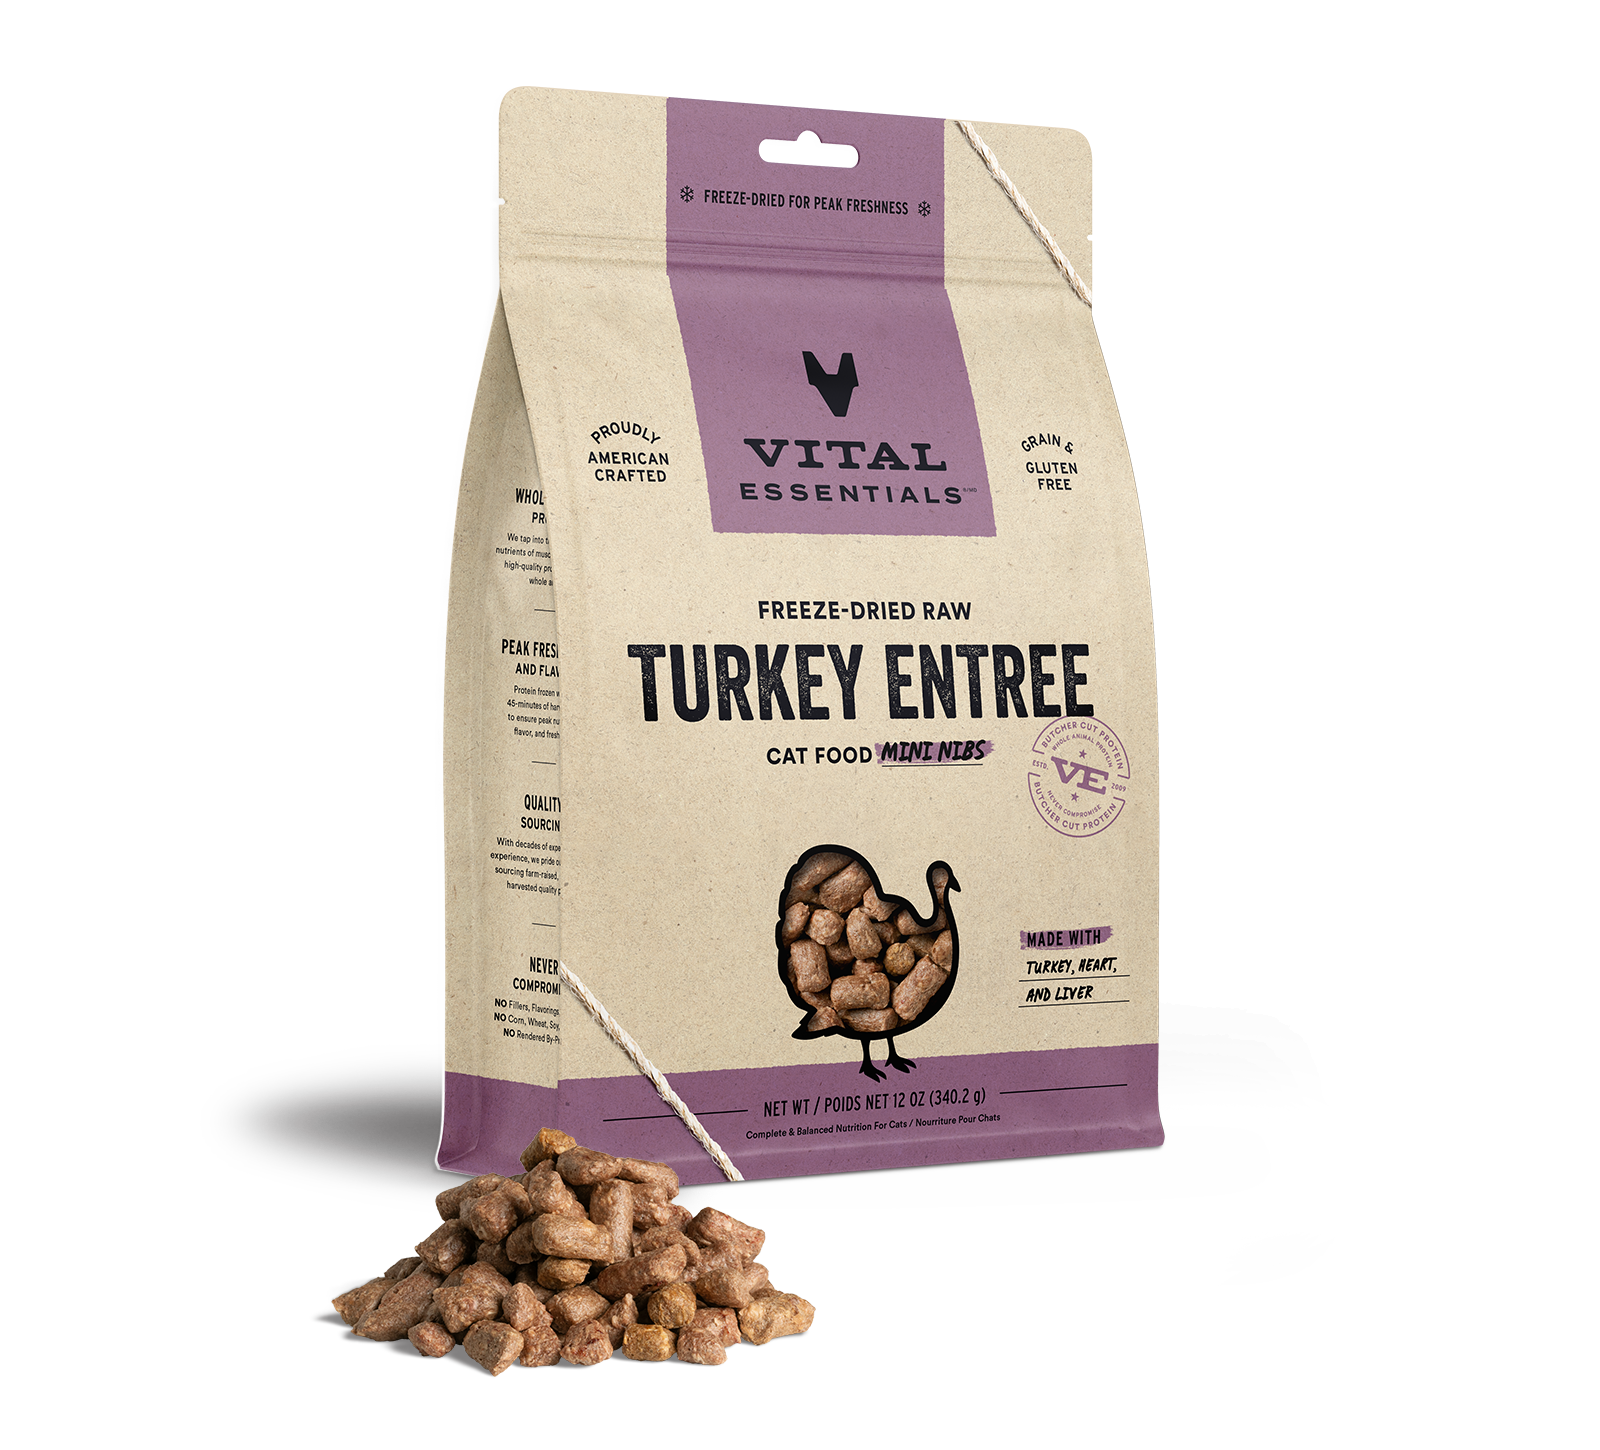 Vital Essentials Freeze-Dried Raw Turkey Entree Cat Food Mini Nibs, 12 oz - Food